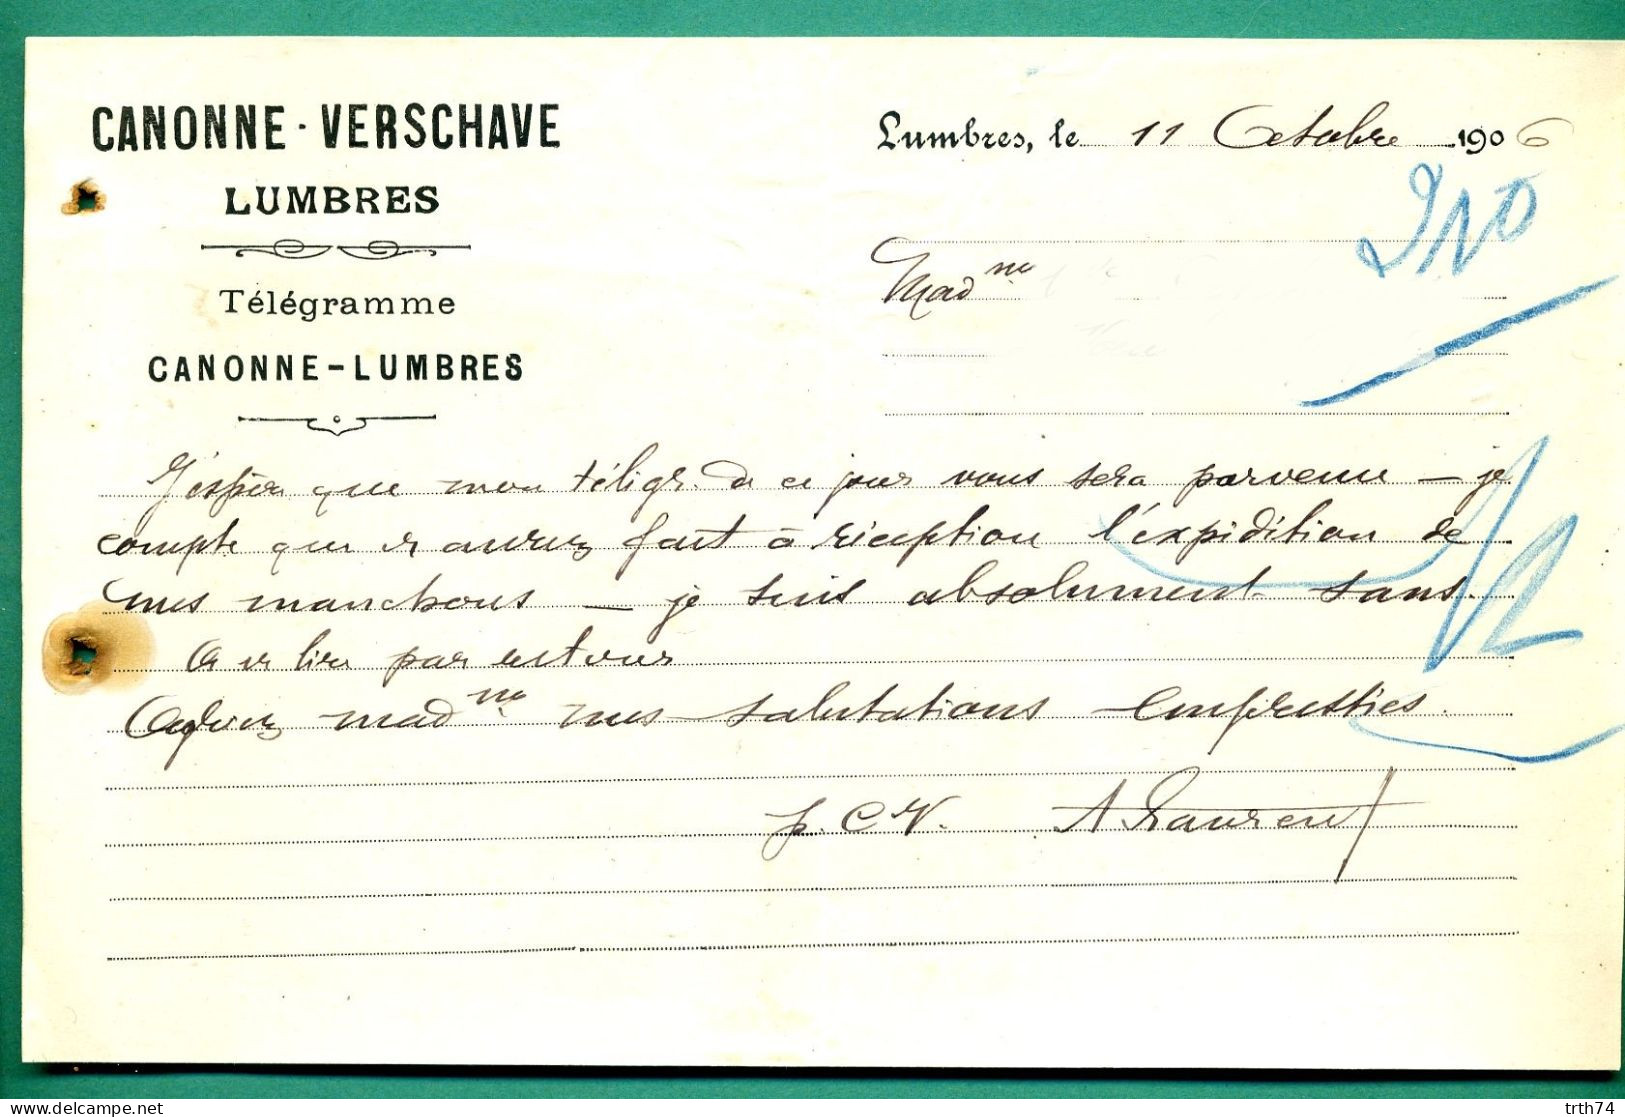 62 Lumbres Canonne Verschare 11 Octobre 1906 - Imprenta & Papelería